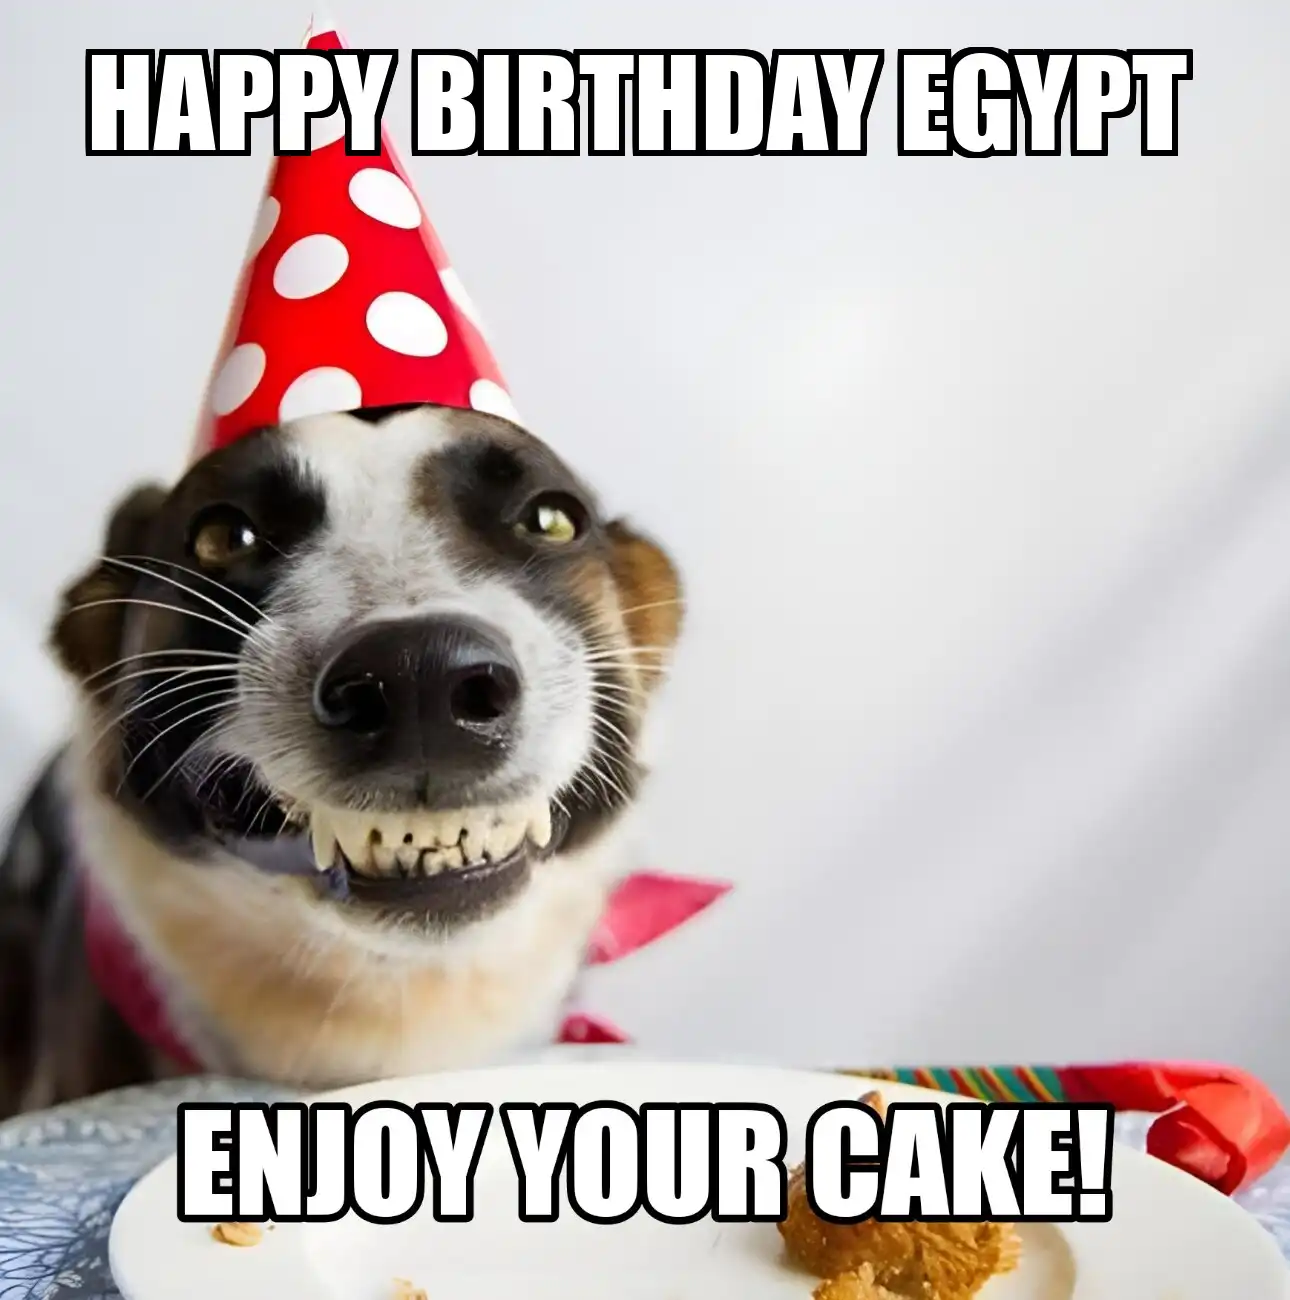 Happy Birthday Egypt Enjoy Your Cake Dog Meme